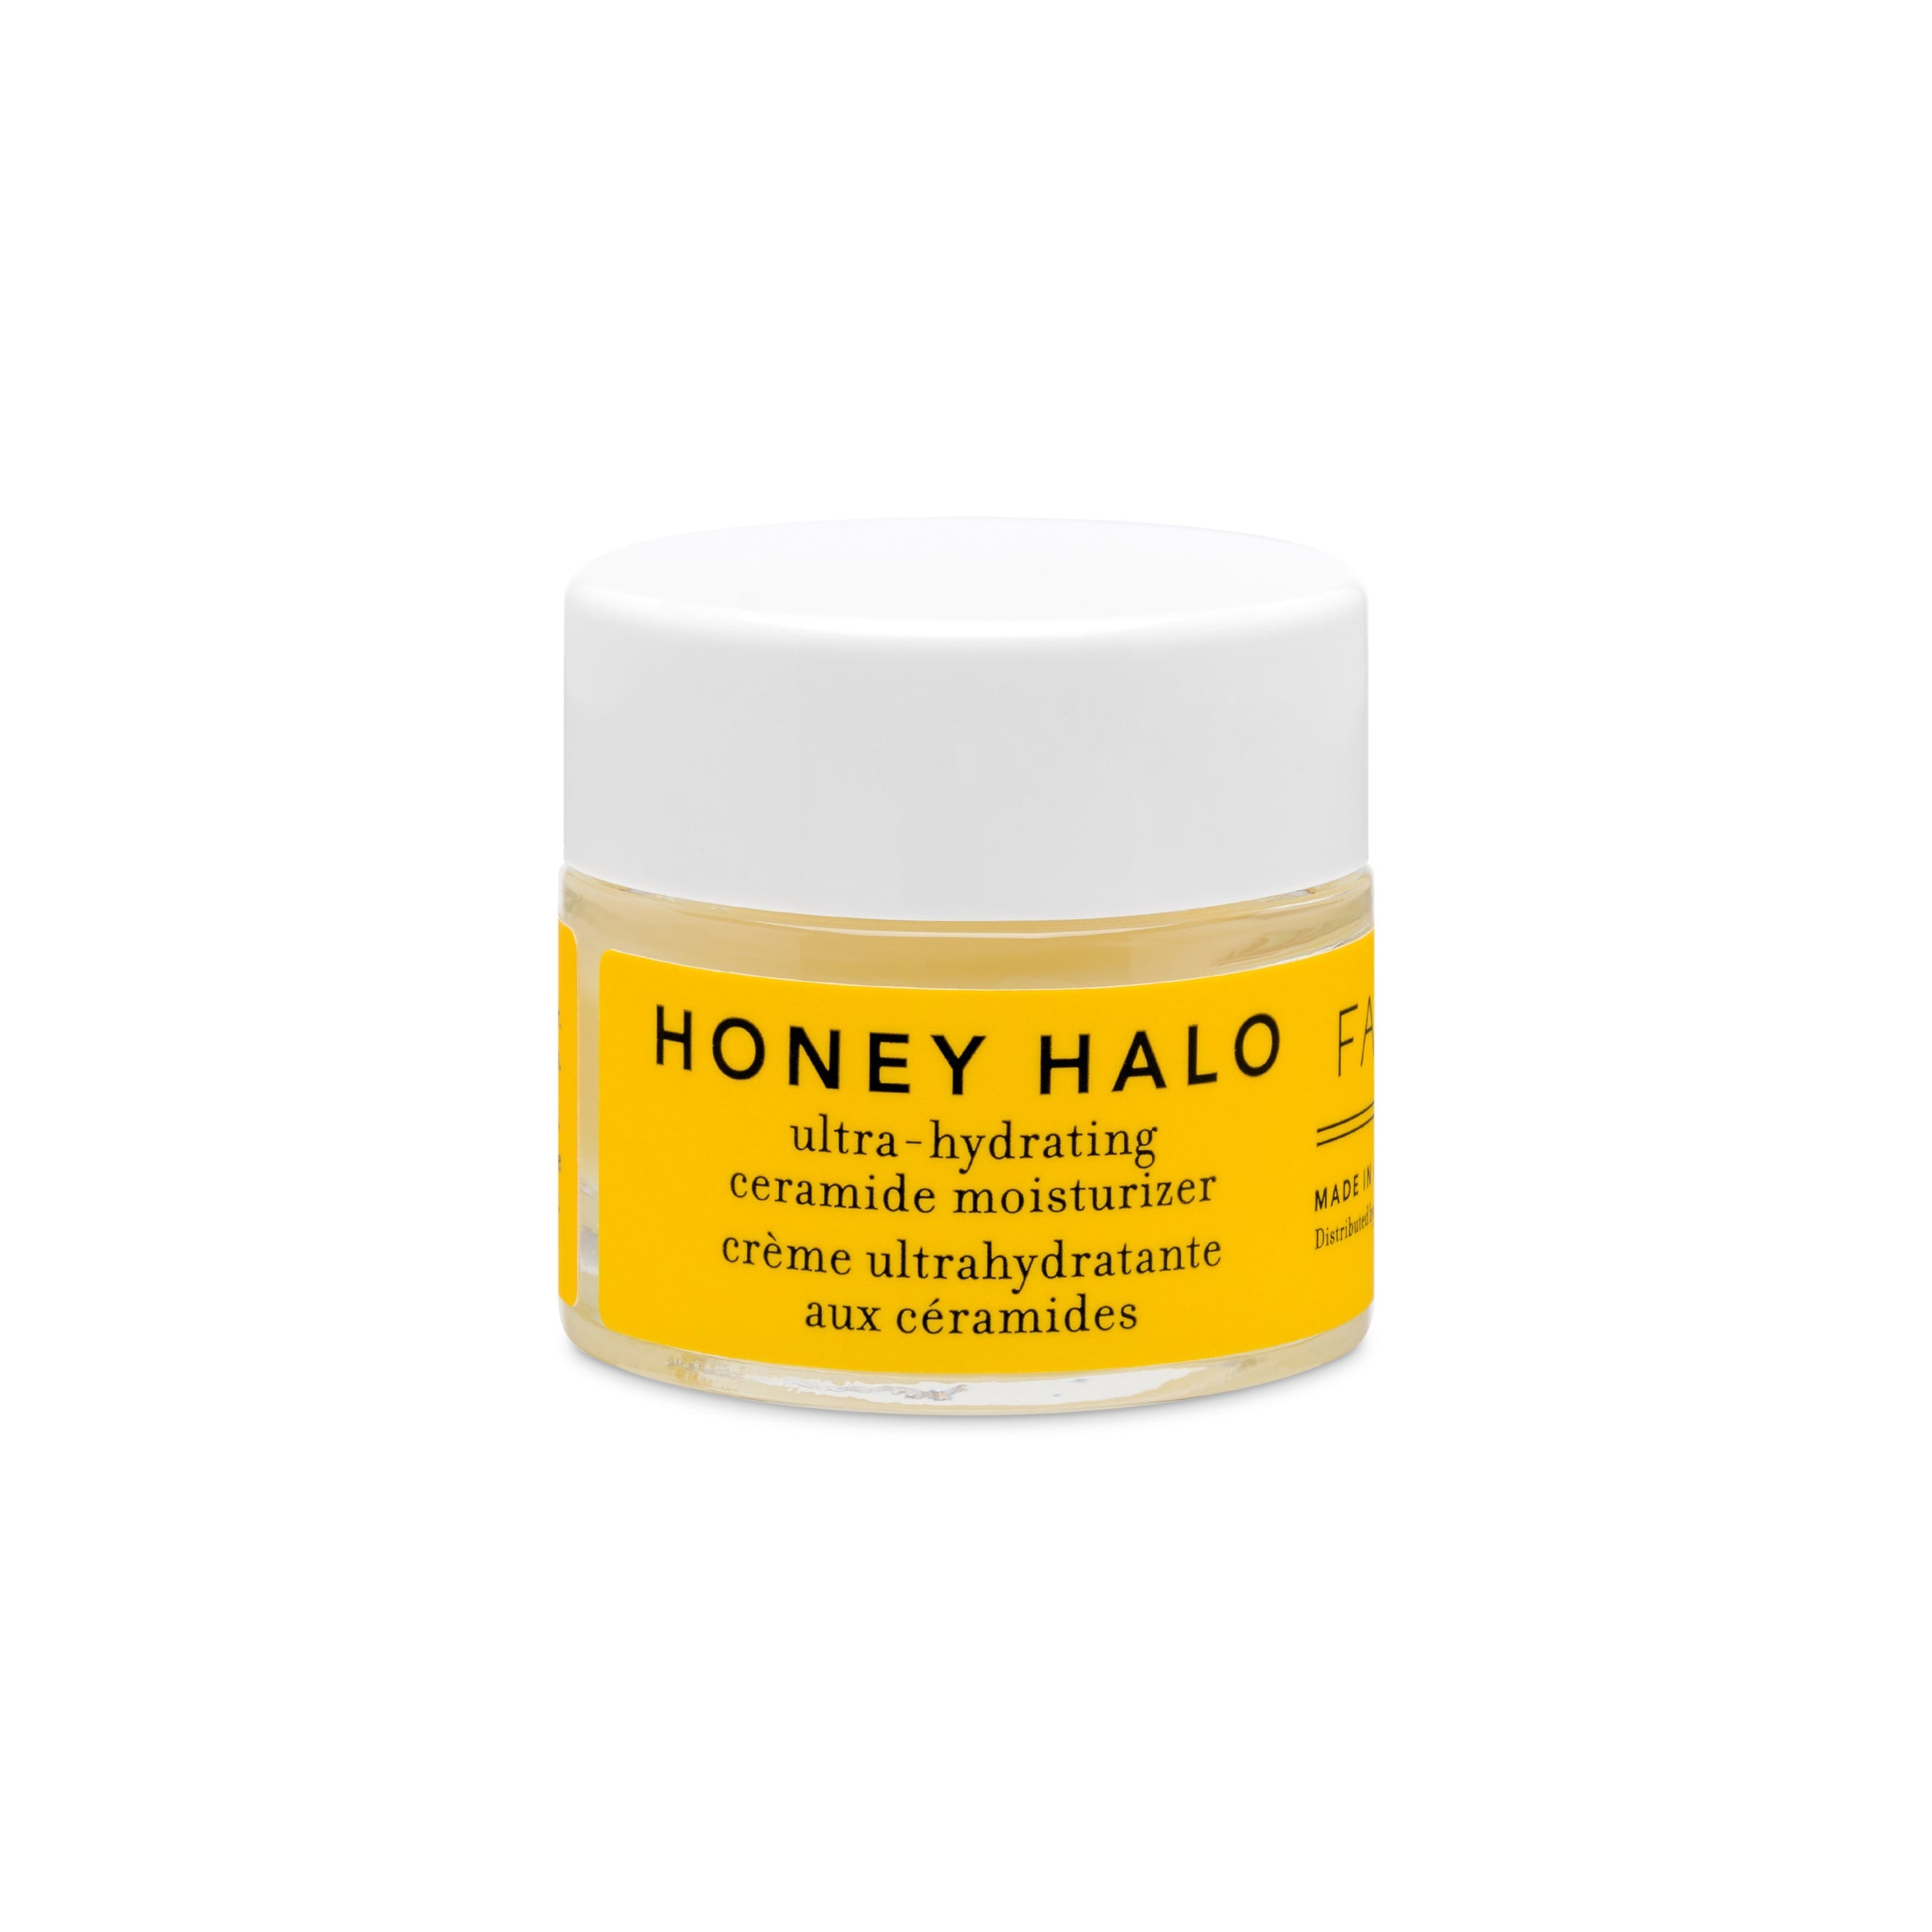 Image of Honey Halo moisturizer